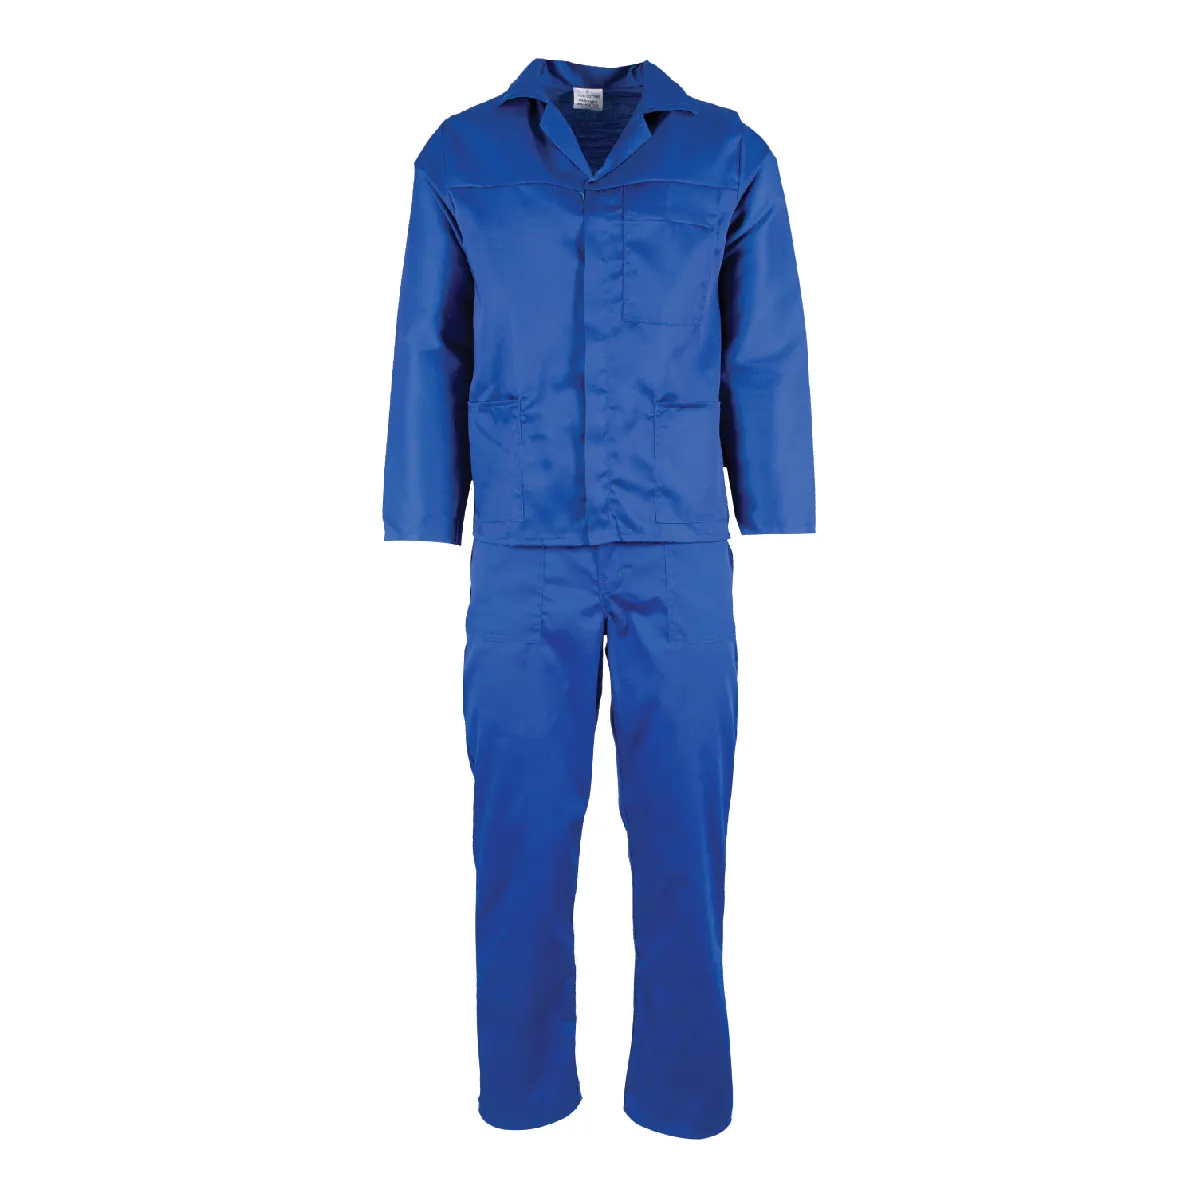 Top Quality Segurança Geral Work Shop Mecânico Suit Construção Vestuário Trabalho Industrial Workwear Uniformes Homens